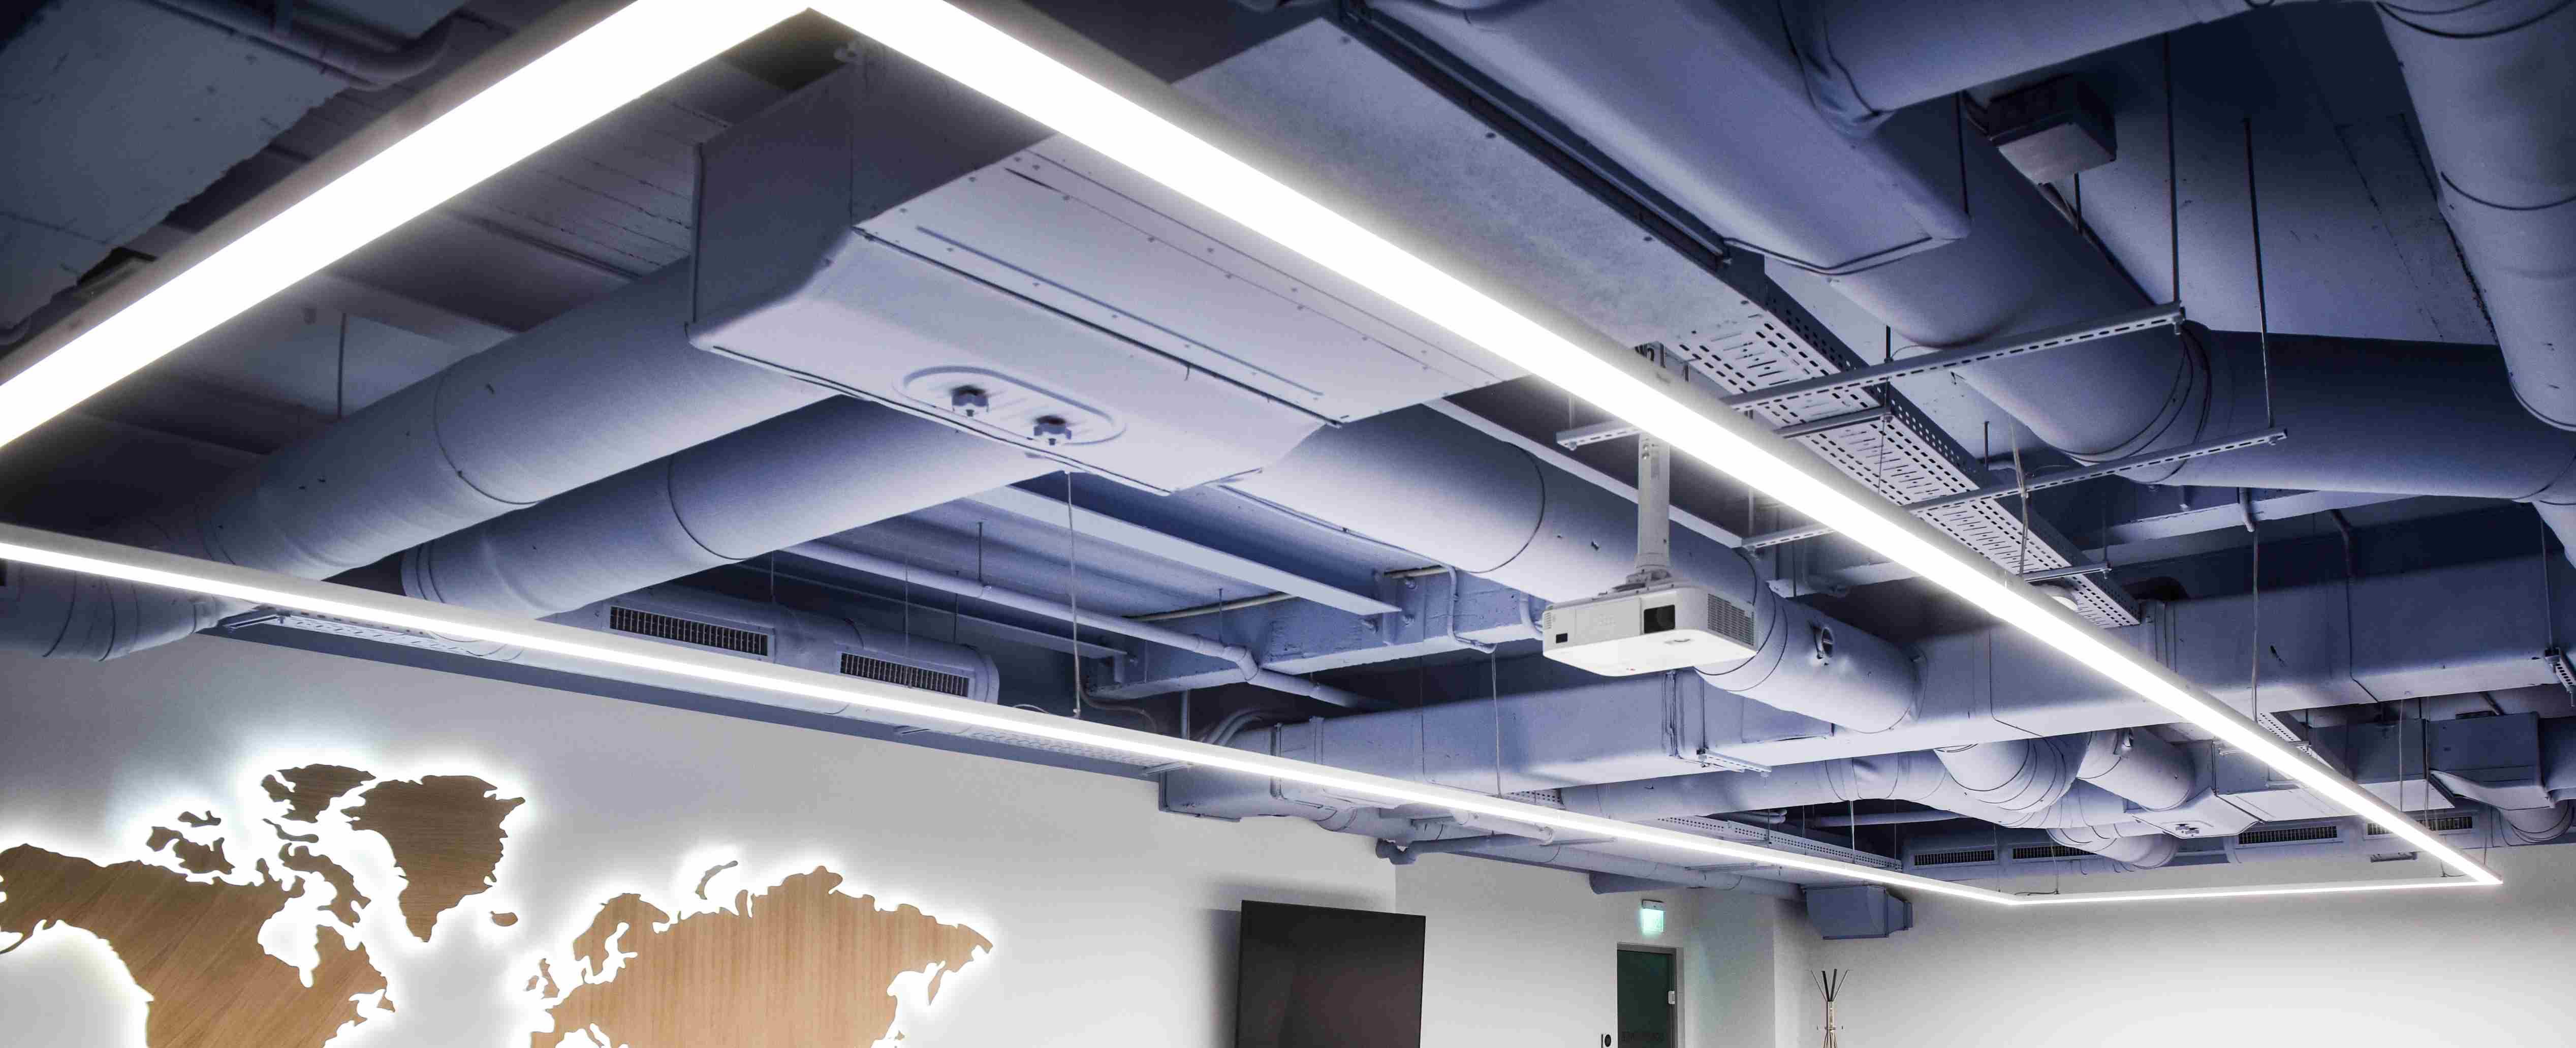 Hersteller von LED-Architekturleuchten für quadratische Deckenanhänger LL0116S-80W